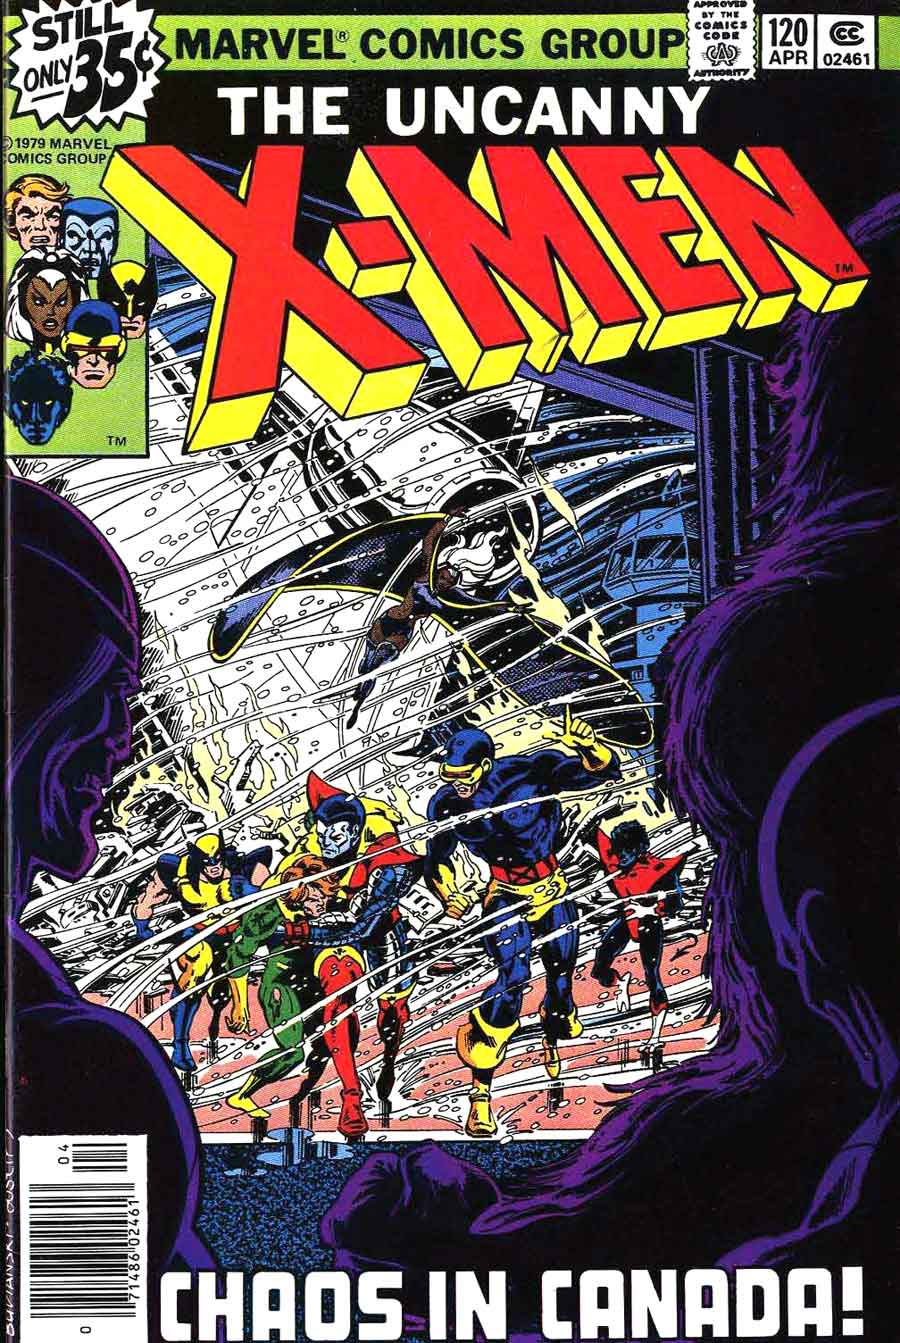 X-men v1 #120 marvel comic book cover art by John Byrne